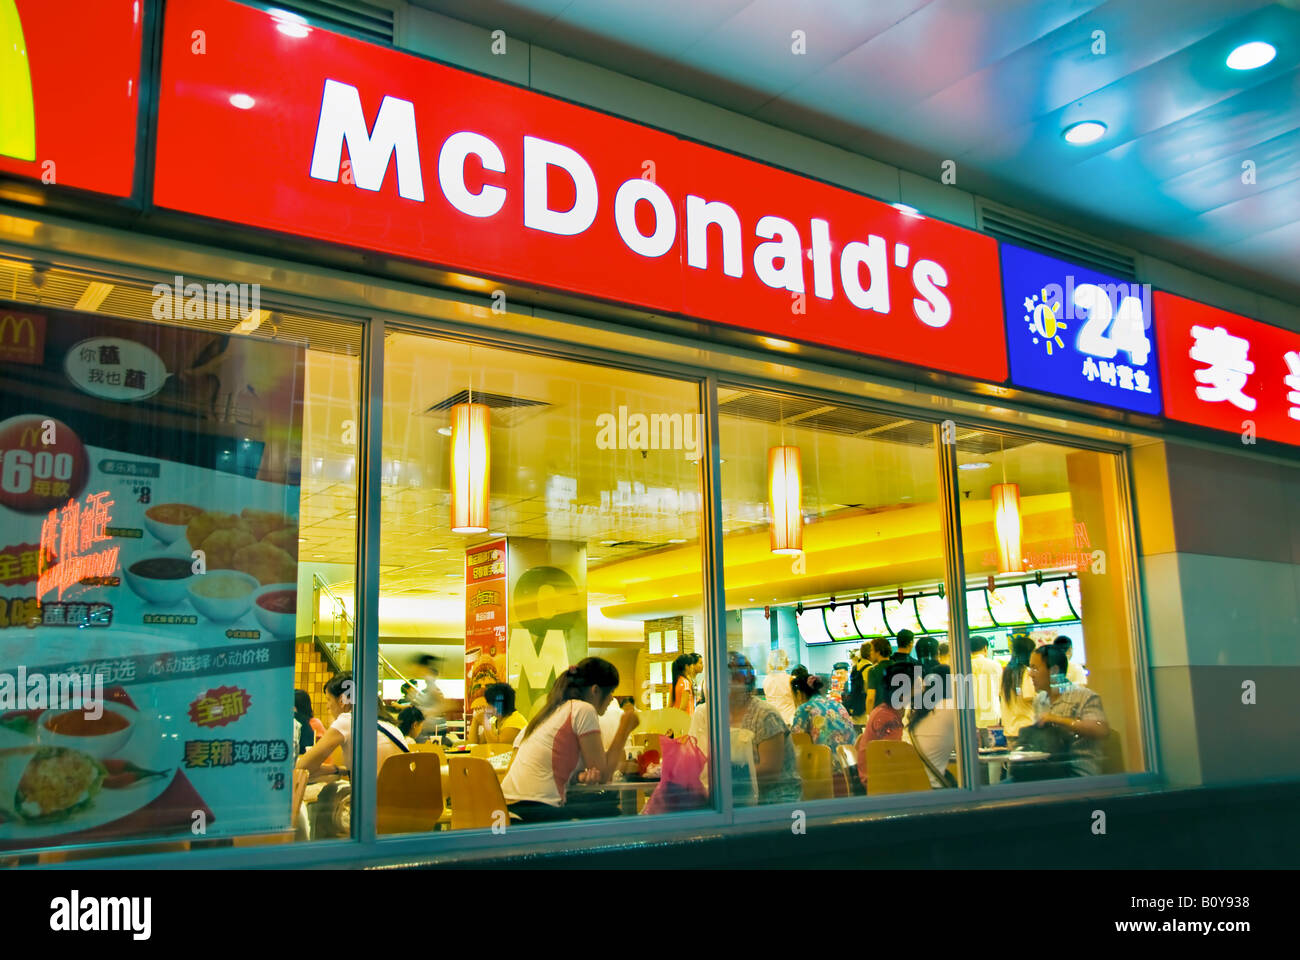 Pékin Chine, les gens, McDonald's Fast Food Restaurant de l'extérieur de la fenêtre, ouvert 24 heures de signe dans la fenêtre, la nourriture mondialisée Banque D'Images